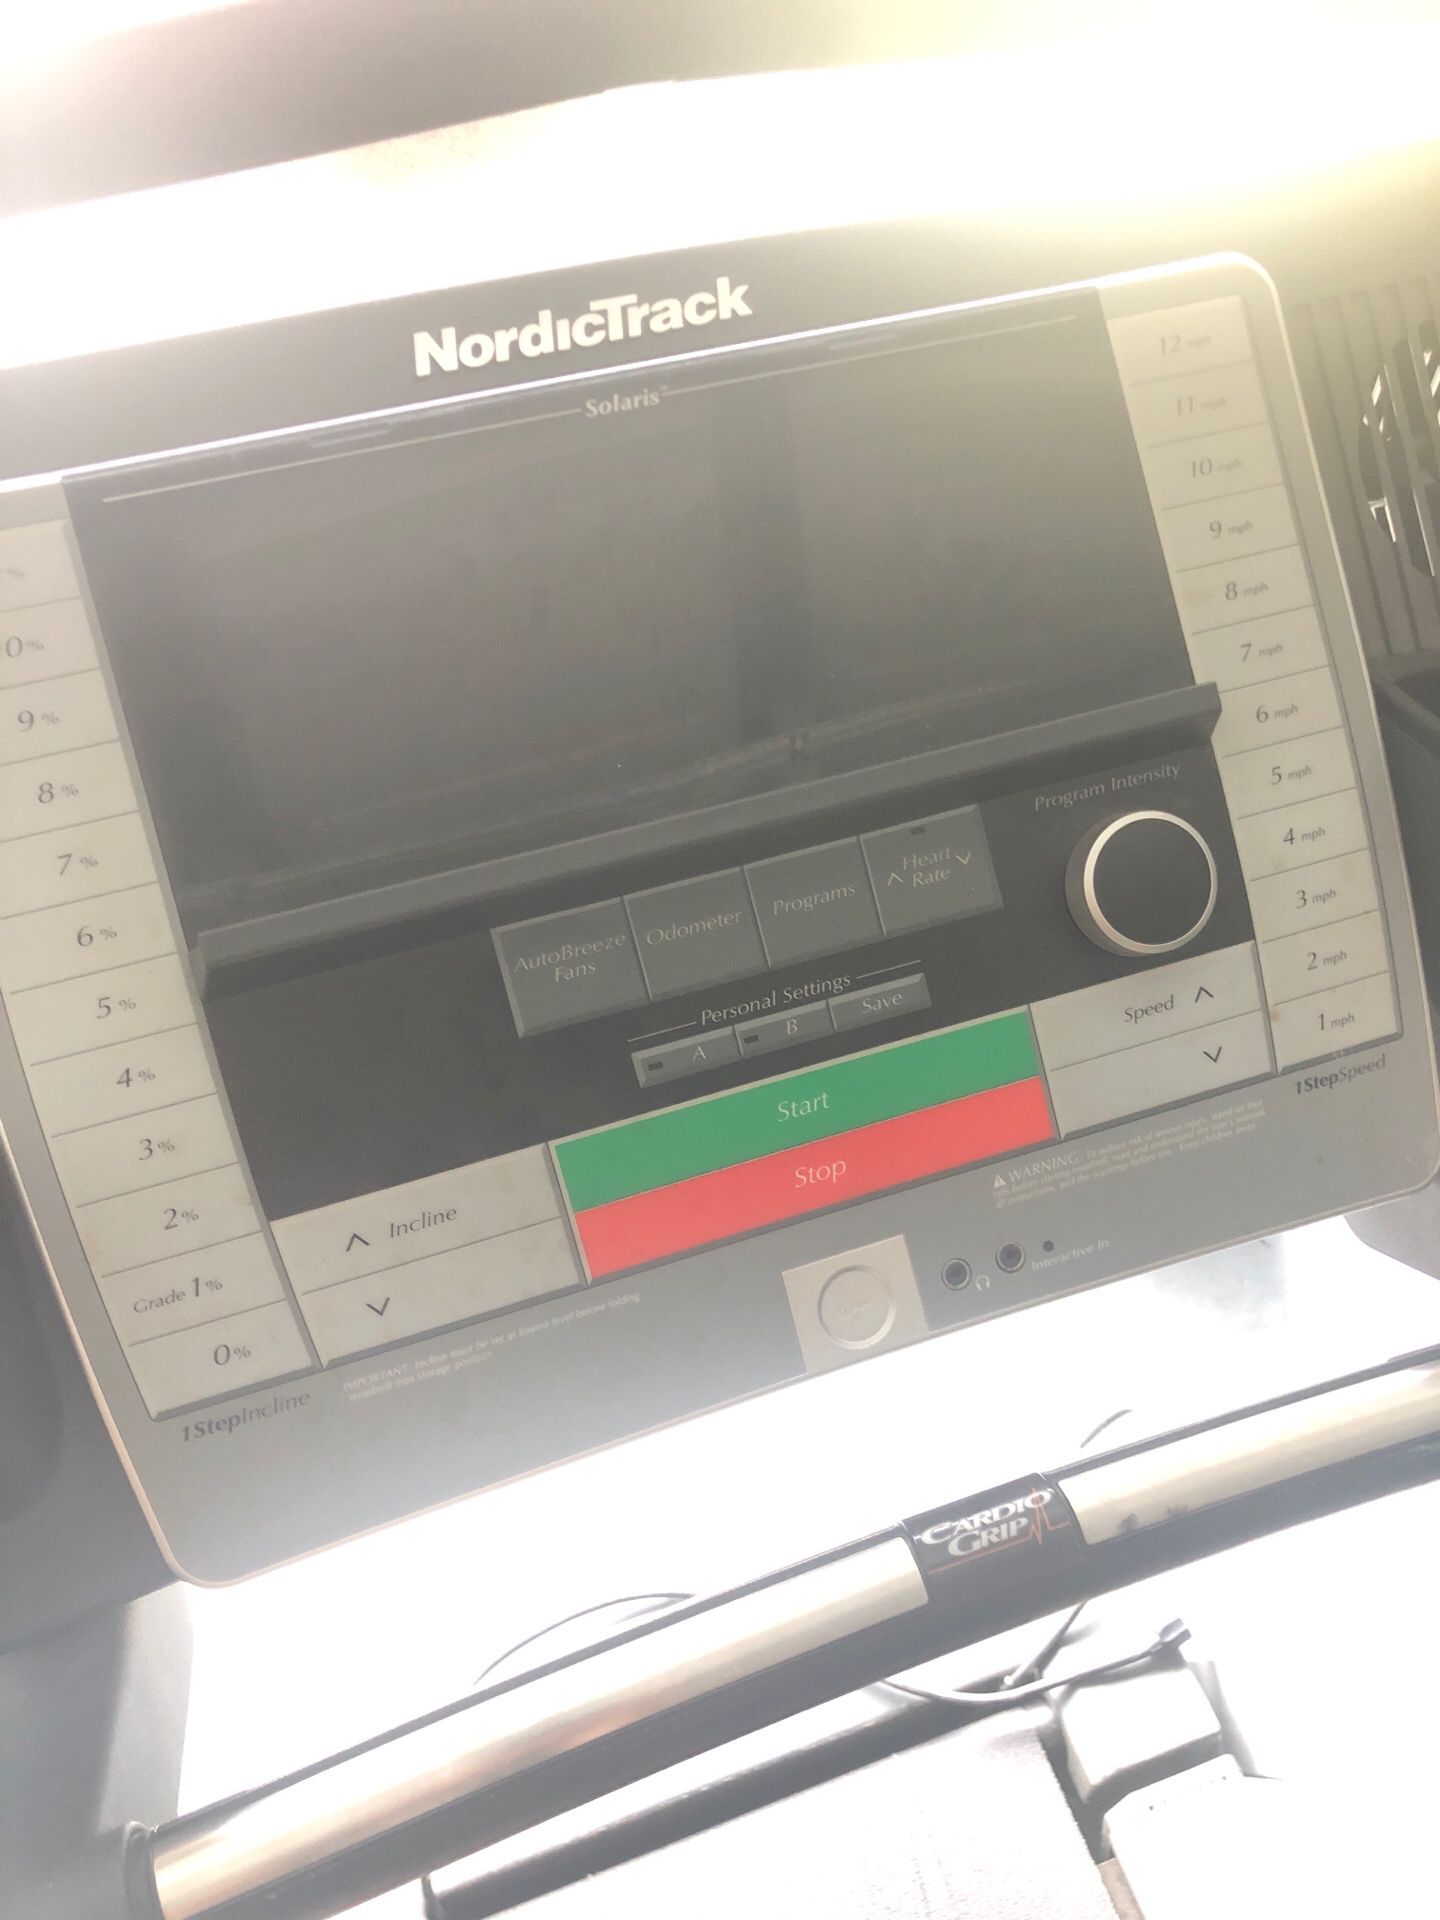 NordicTrack Treadmill 12mph